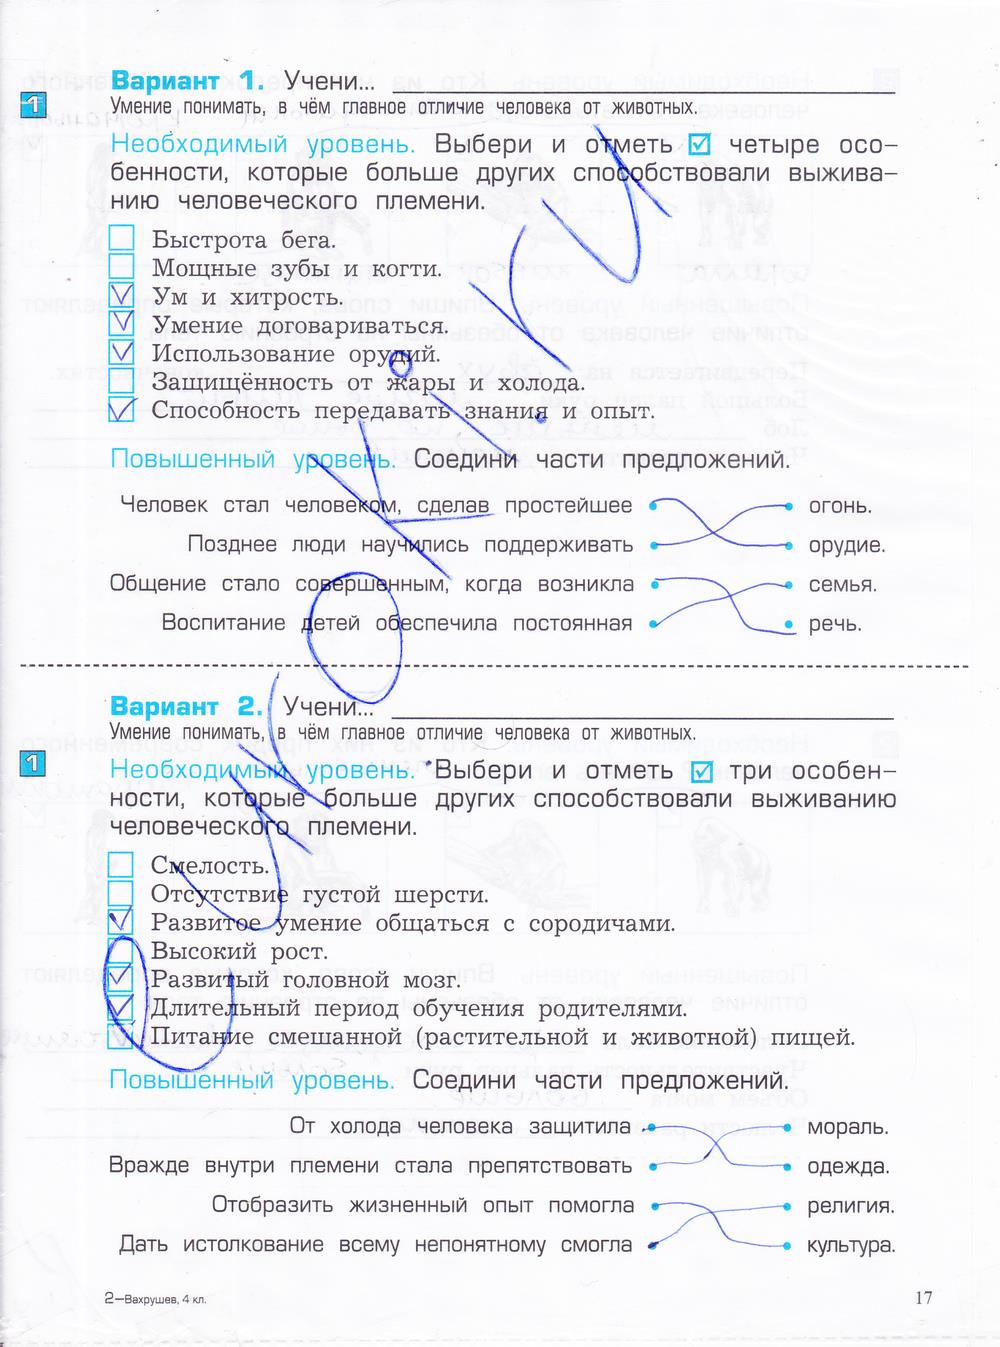 гдз 4 класс проверочные и контрольные работы часть 1 страница 17 окружающий мир Вахрушев, Бурский, Родыгина